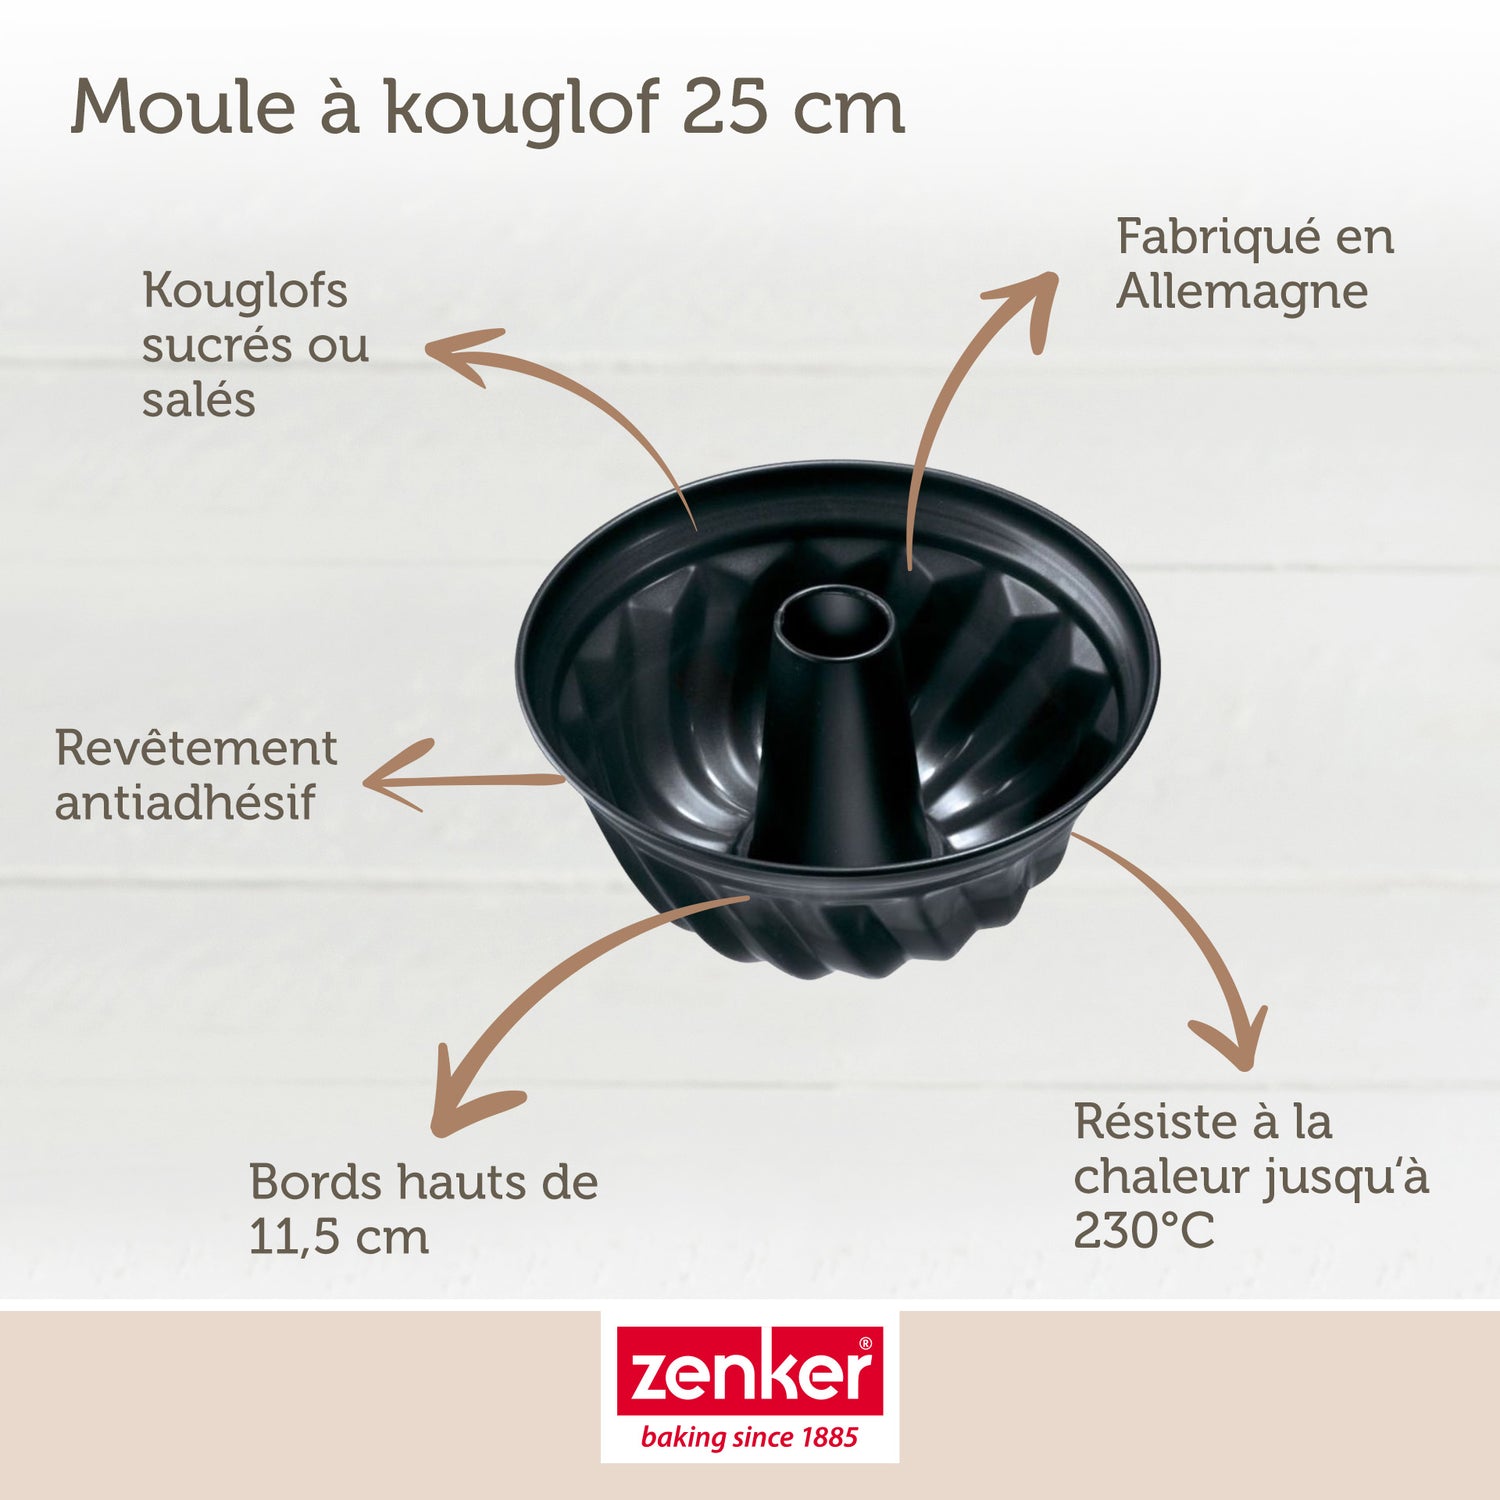 Moule à kouglof 25 cm Zenker Black Metallic